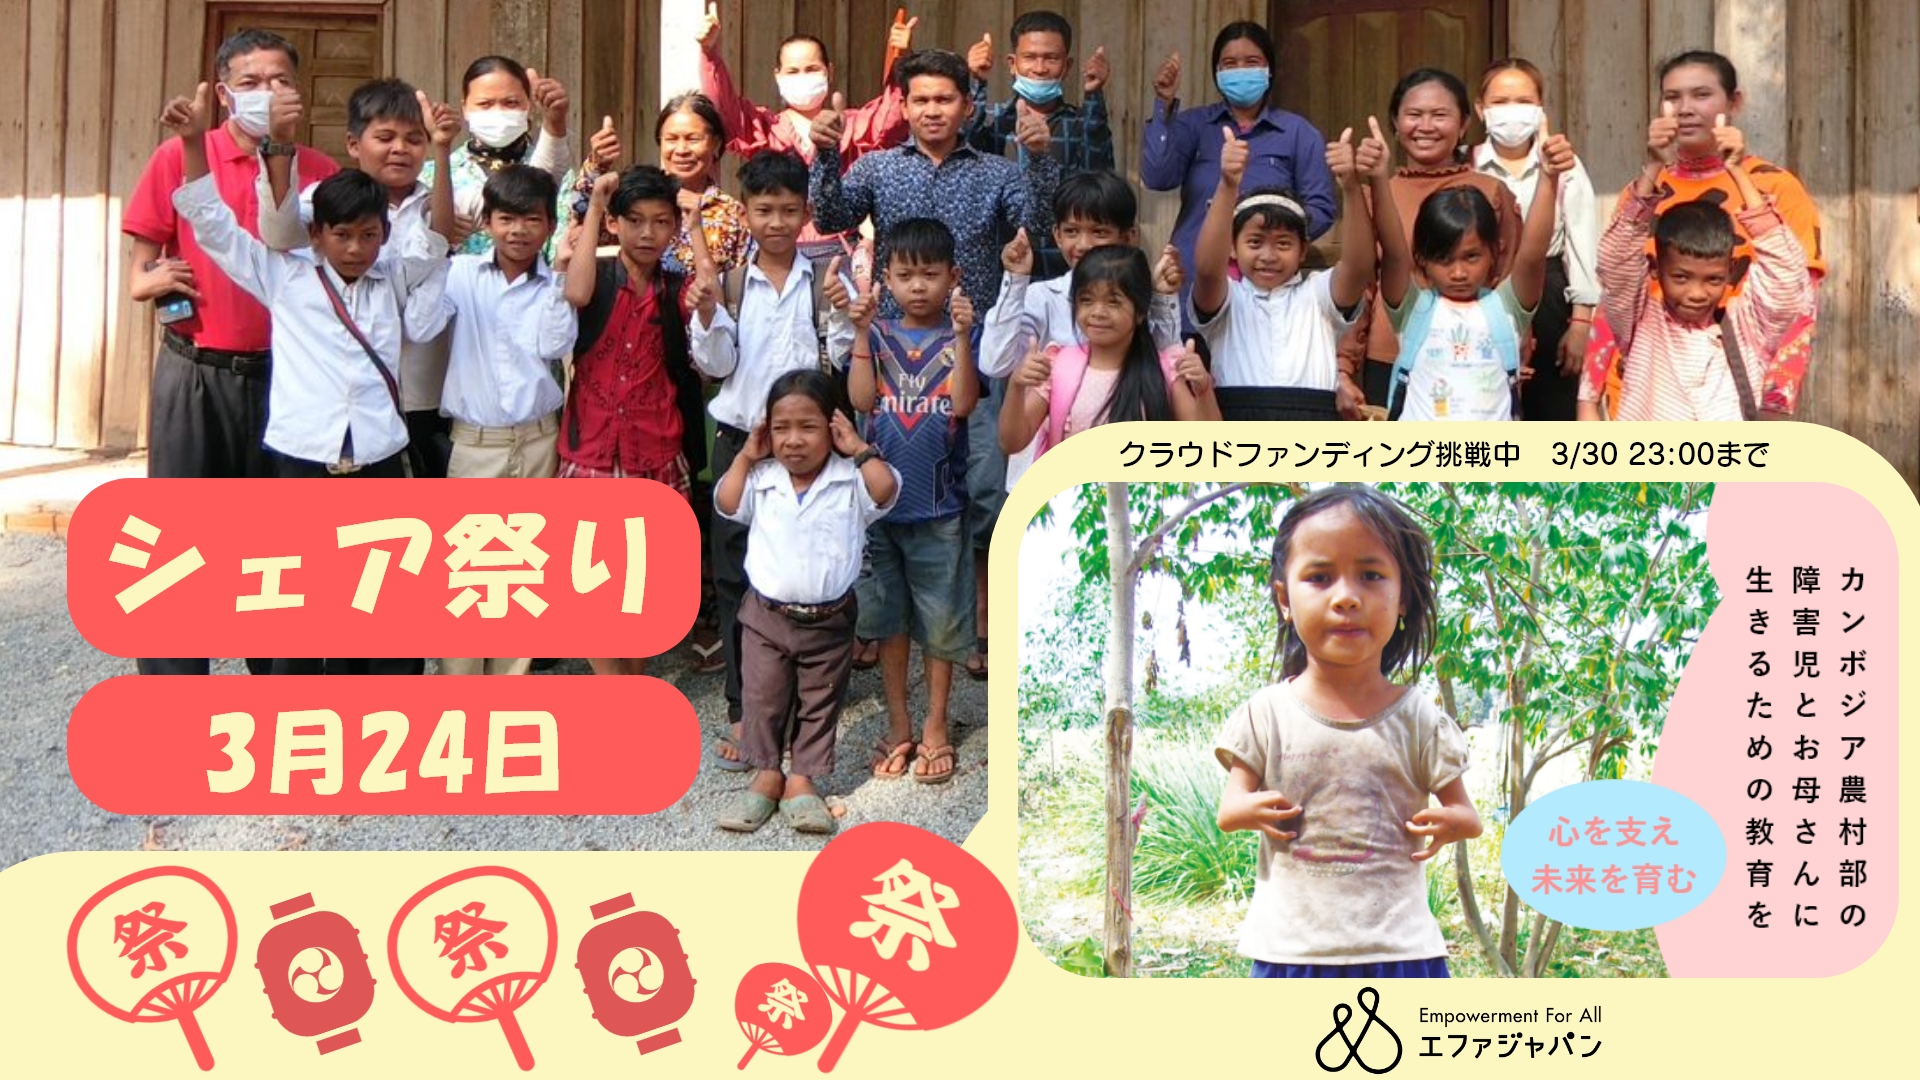 ☆シェア祭り☆ 3/24 18:00〜22:00 一緒に盛り上げよう！みんなでカンボジアの障害のある子どもたちとお母さんたちを応援！！（Facebookトークライブも同時開催）